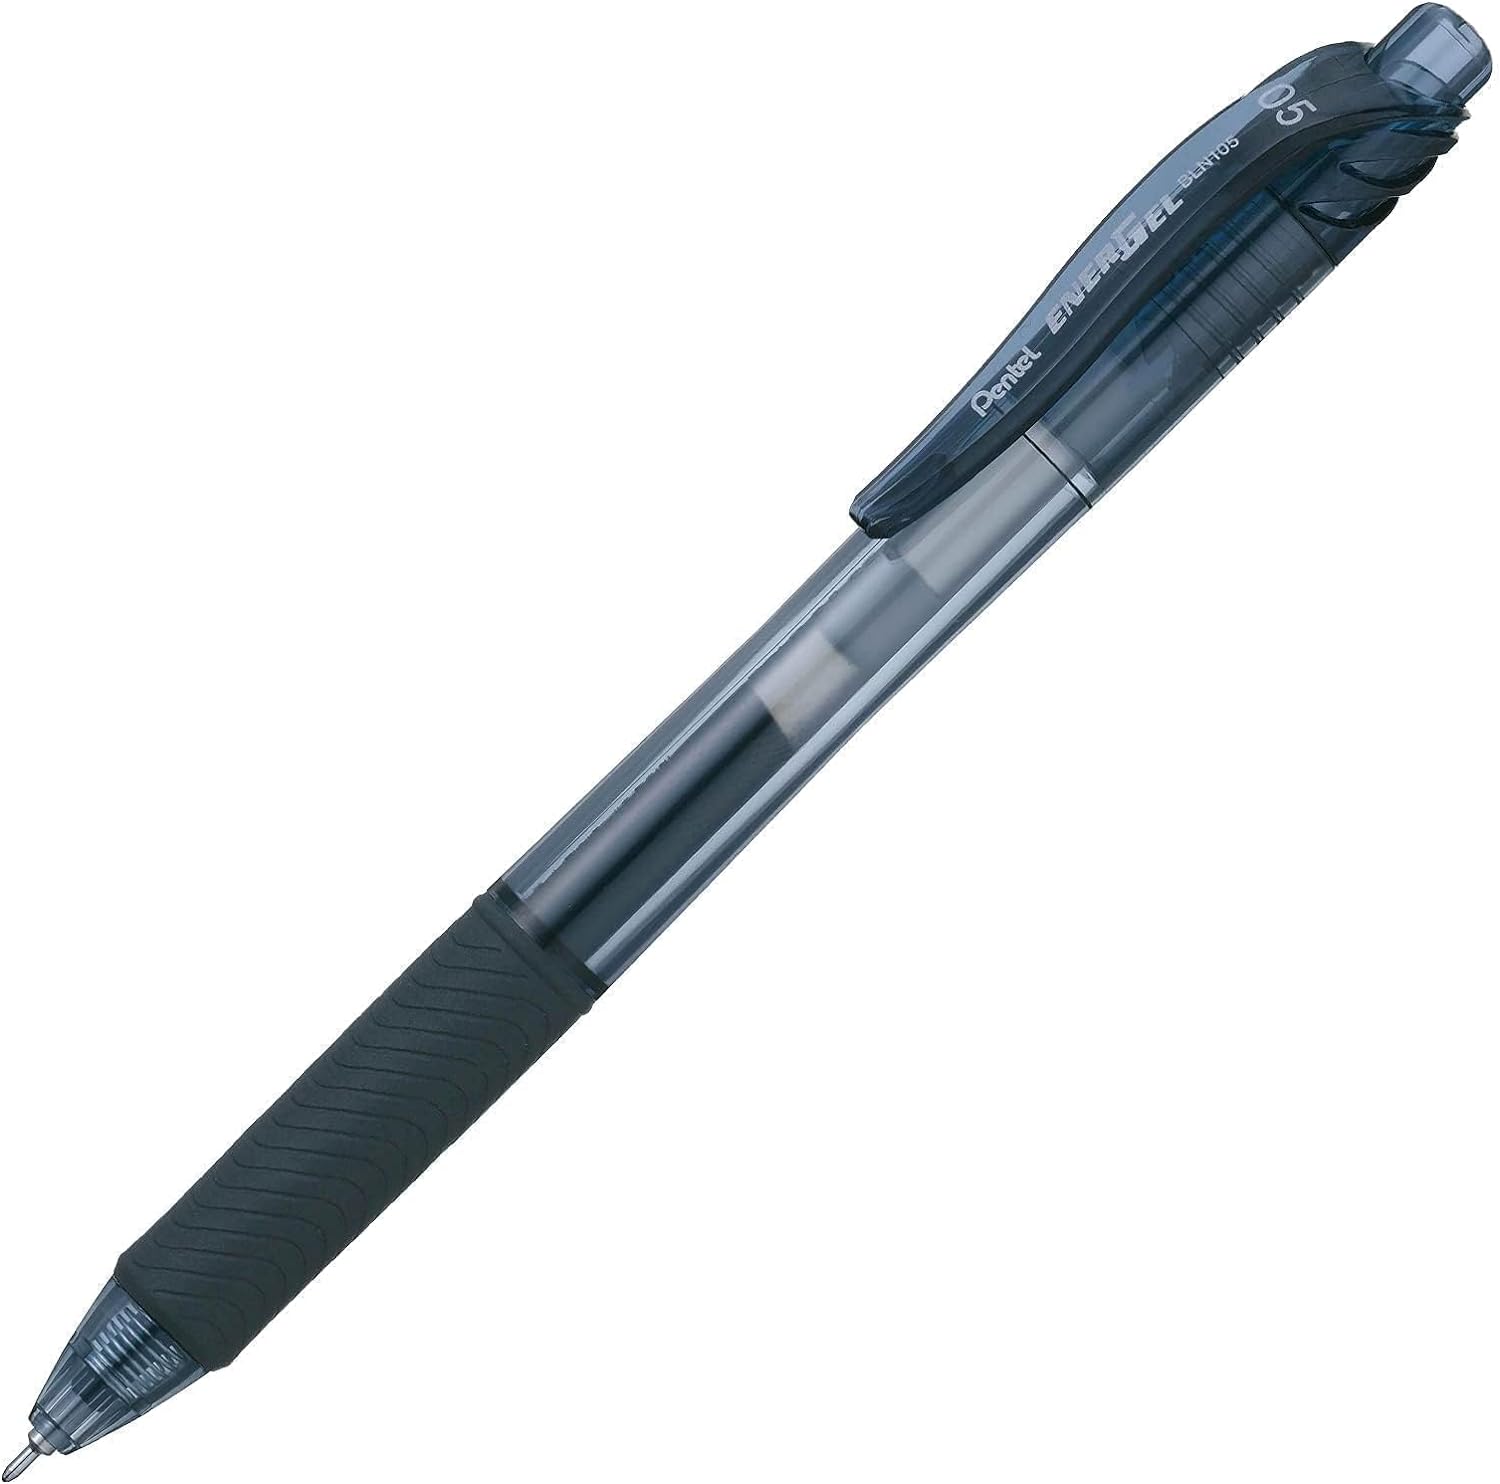 Pentel EnerGel-X Retractable Gel Pen, 0.5 mm, Black, Pack of 12